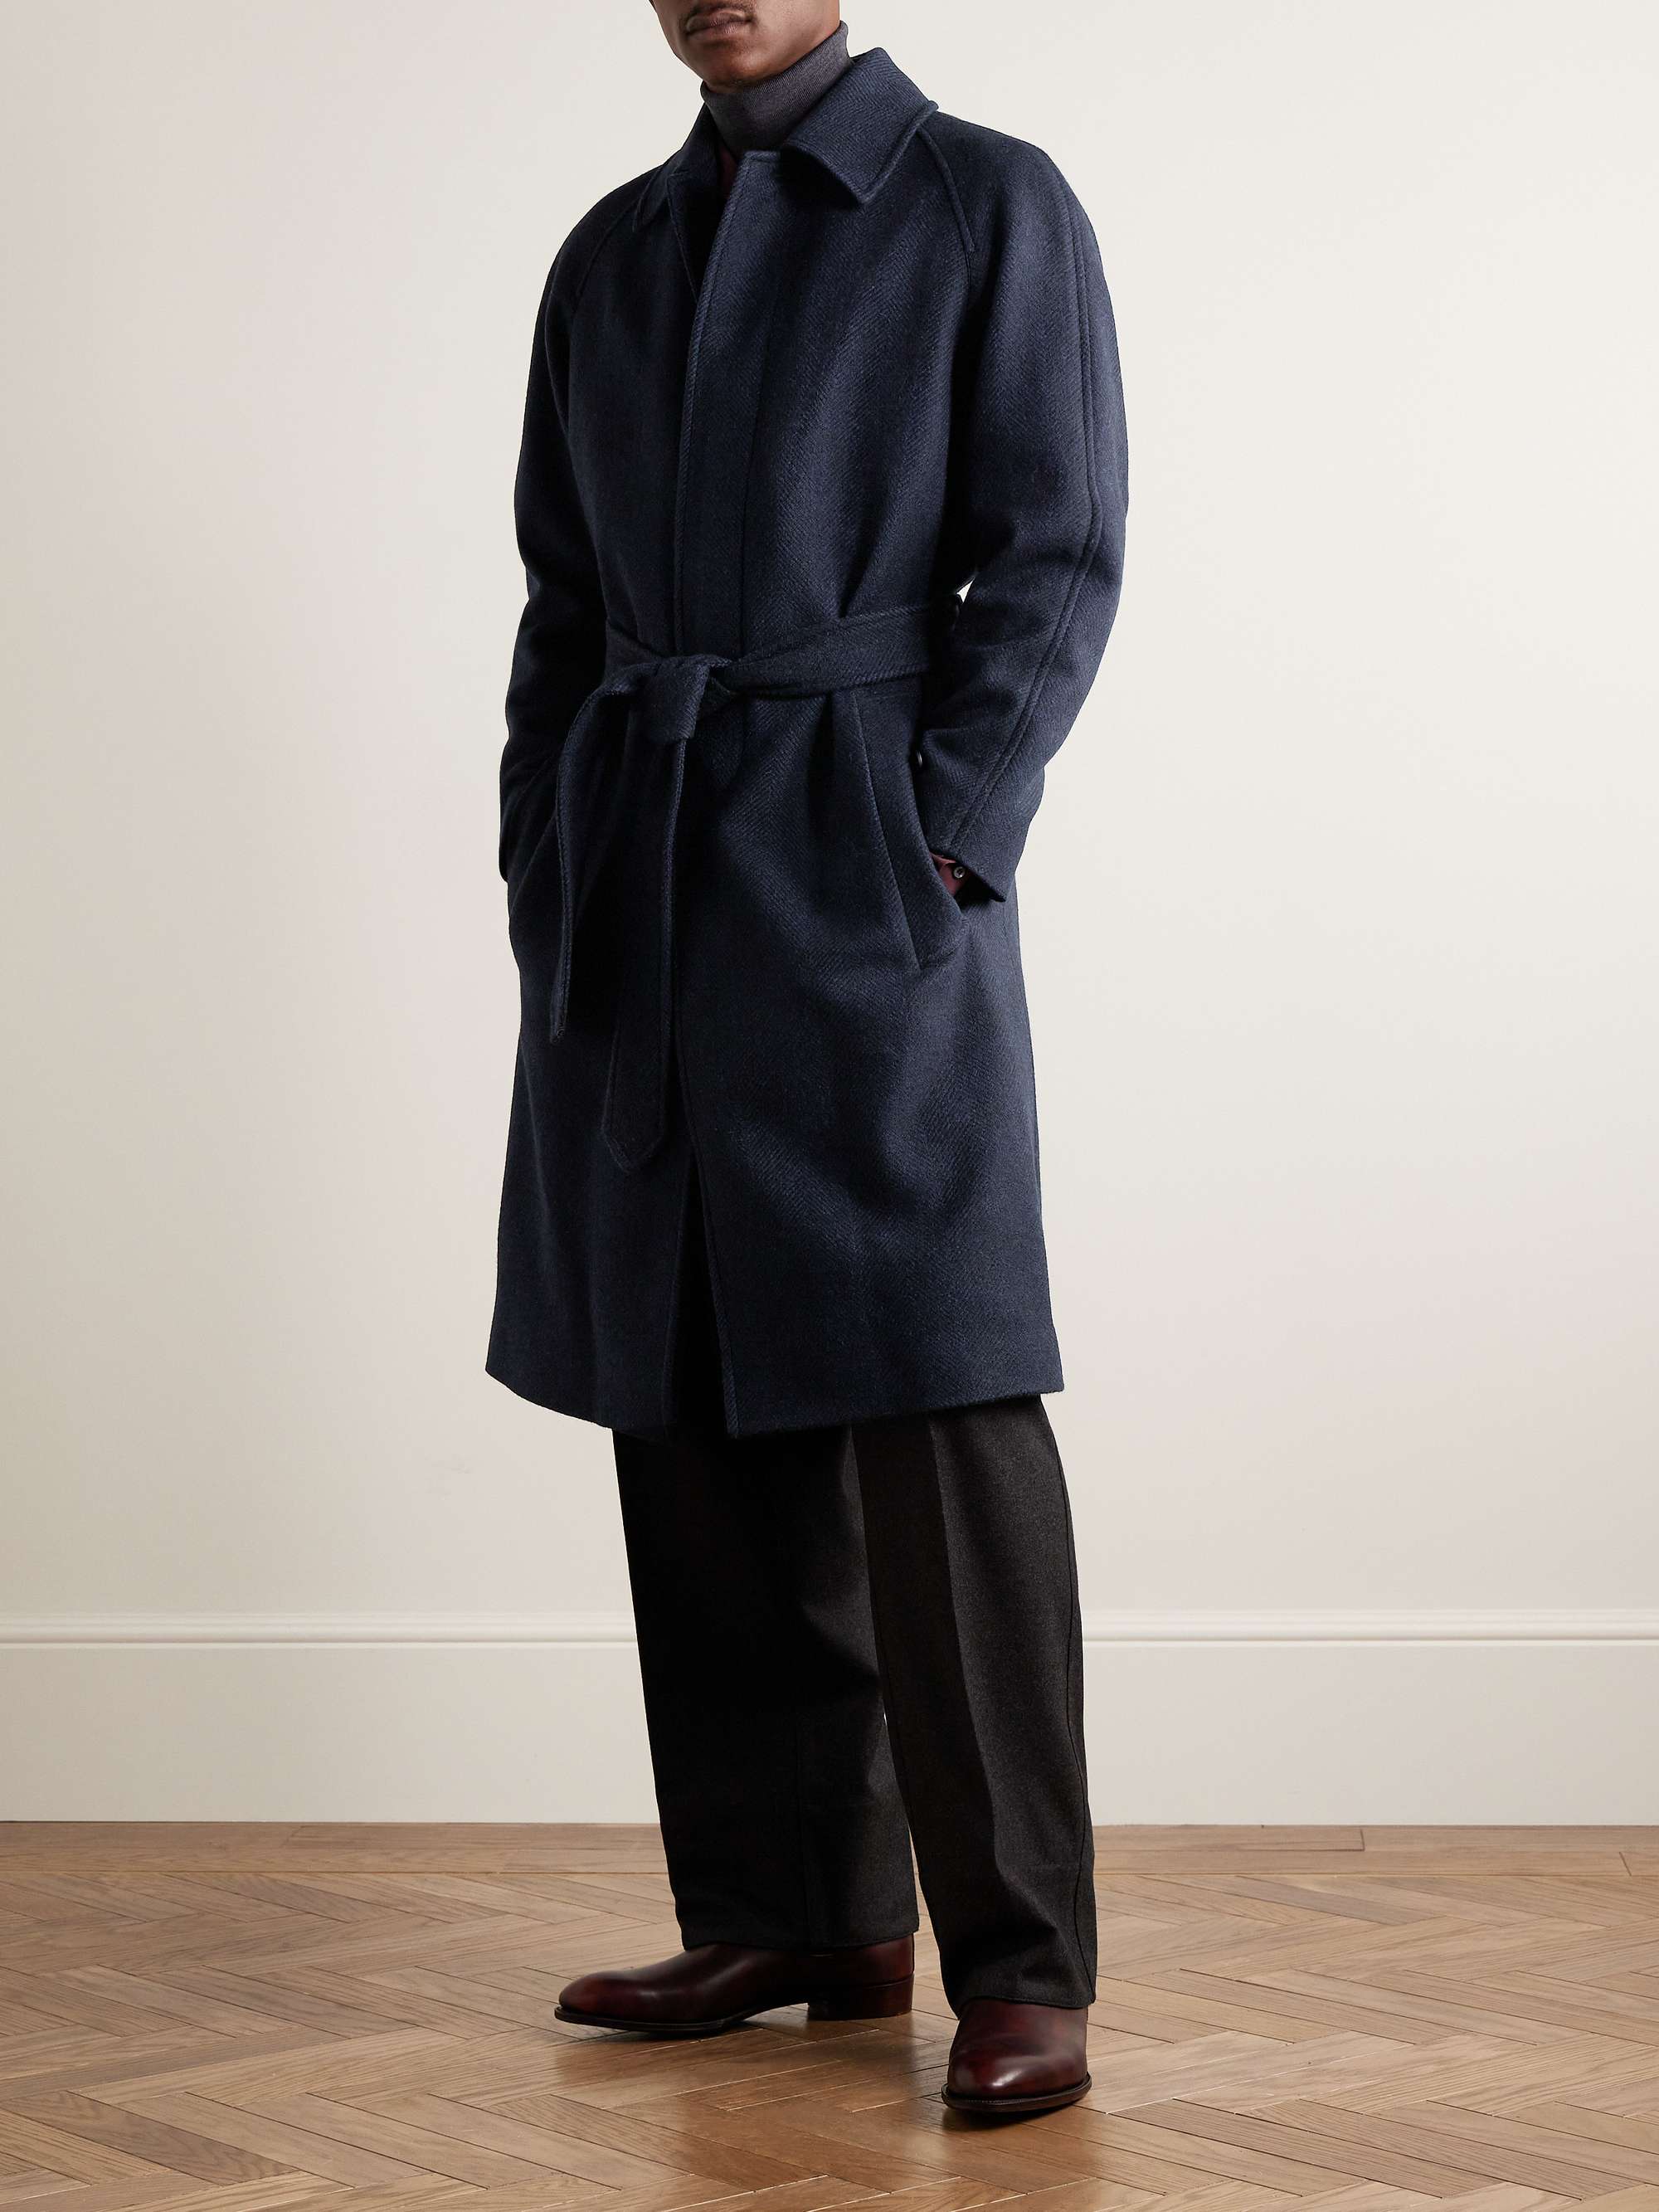 RICHARD JAMES Belted Herringbone Alpaca-Blend Tweed Coat for Men | MR ...